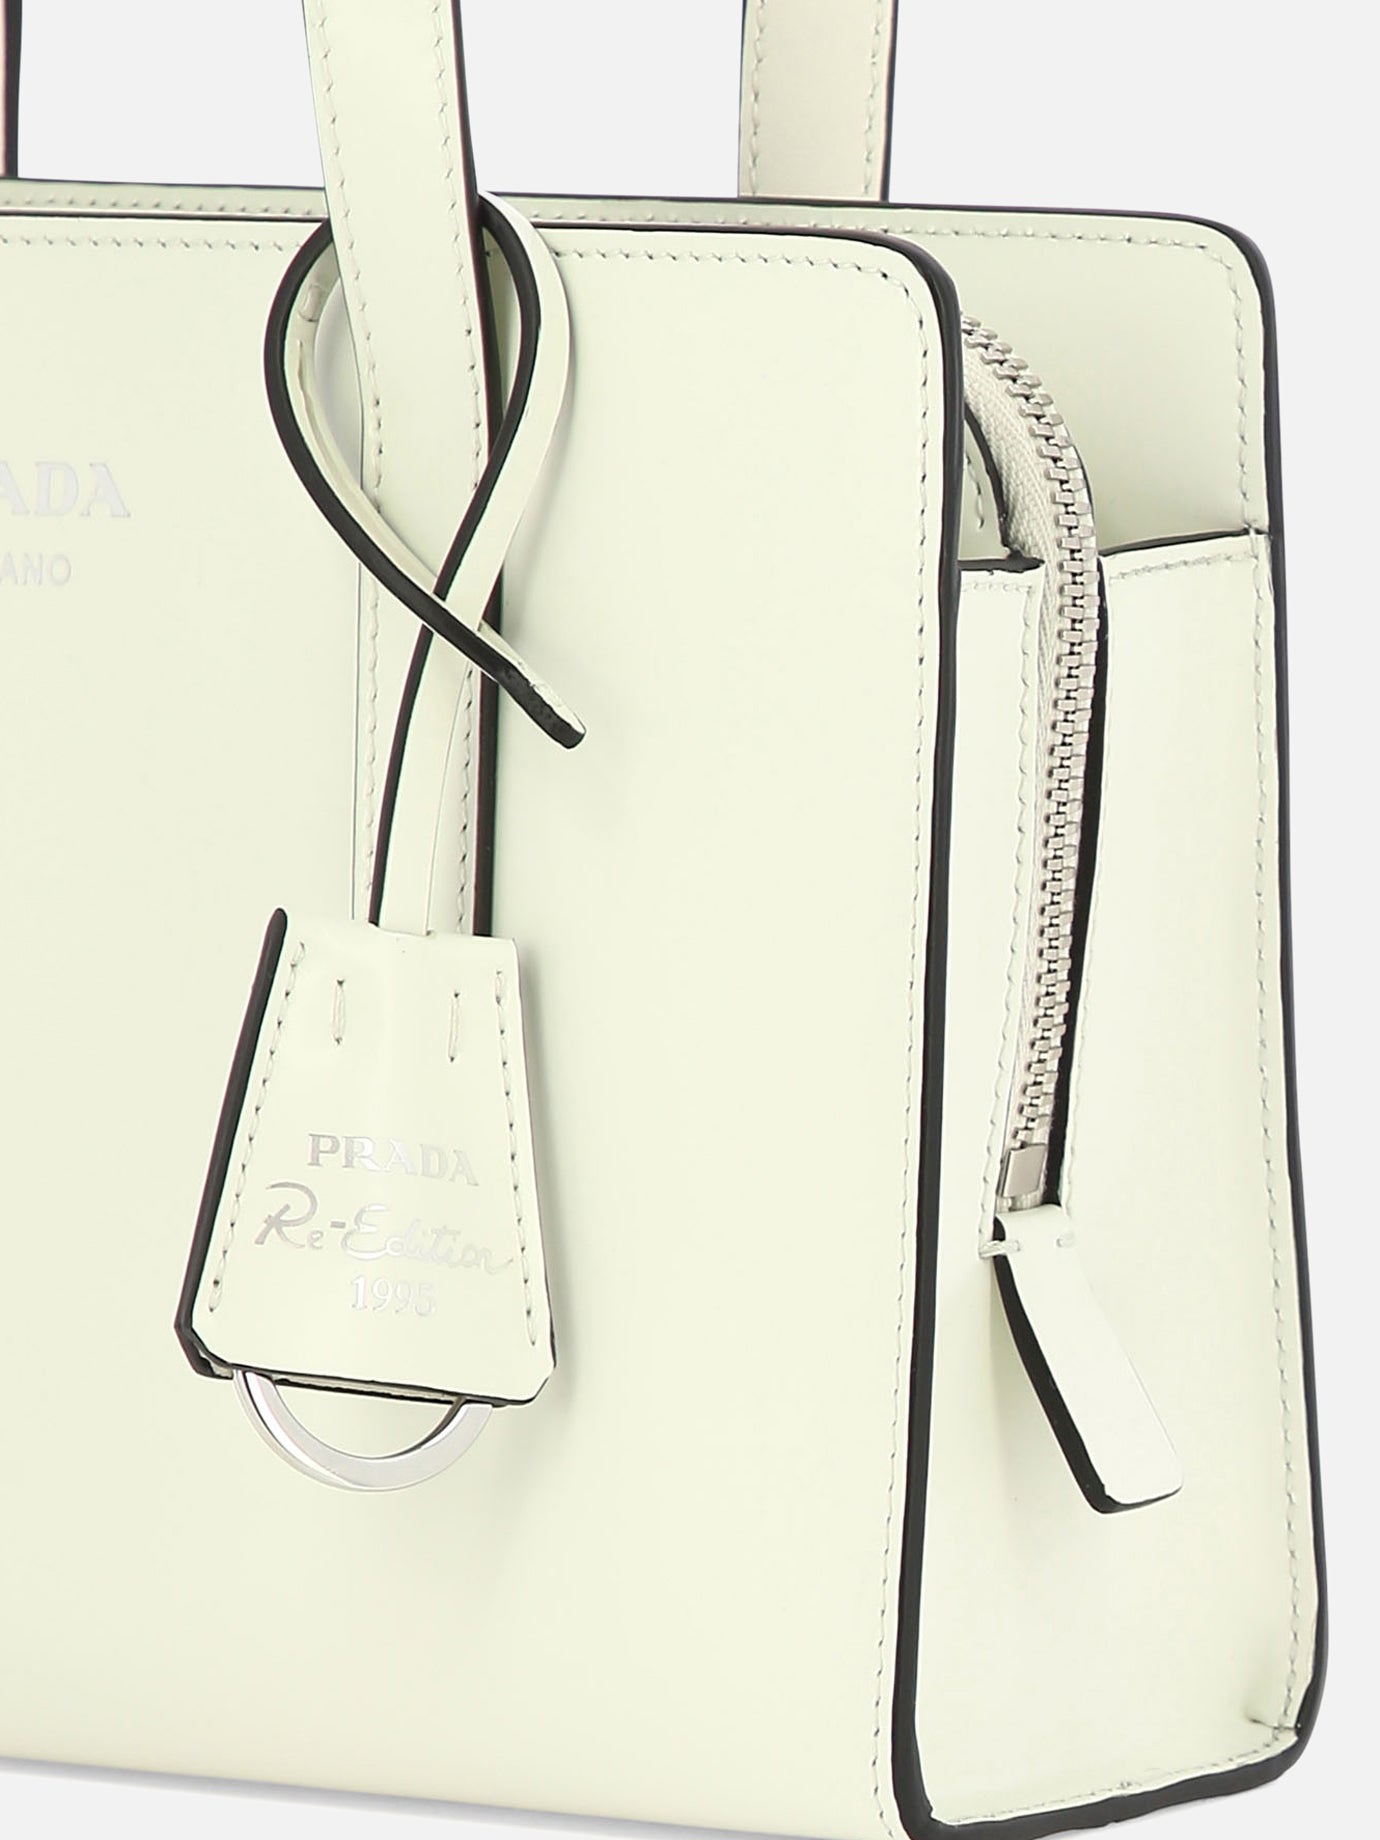 "Prada Re-Edition 1995" handbag